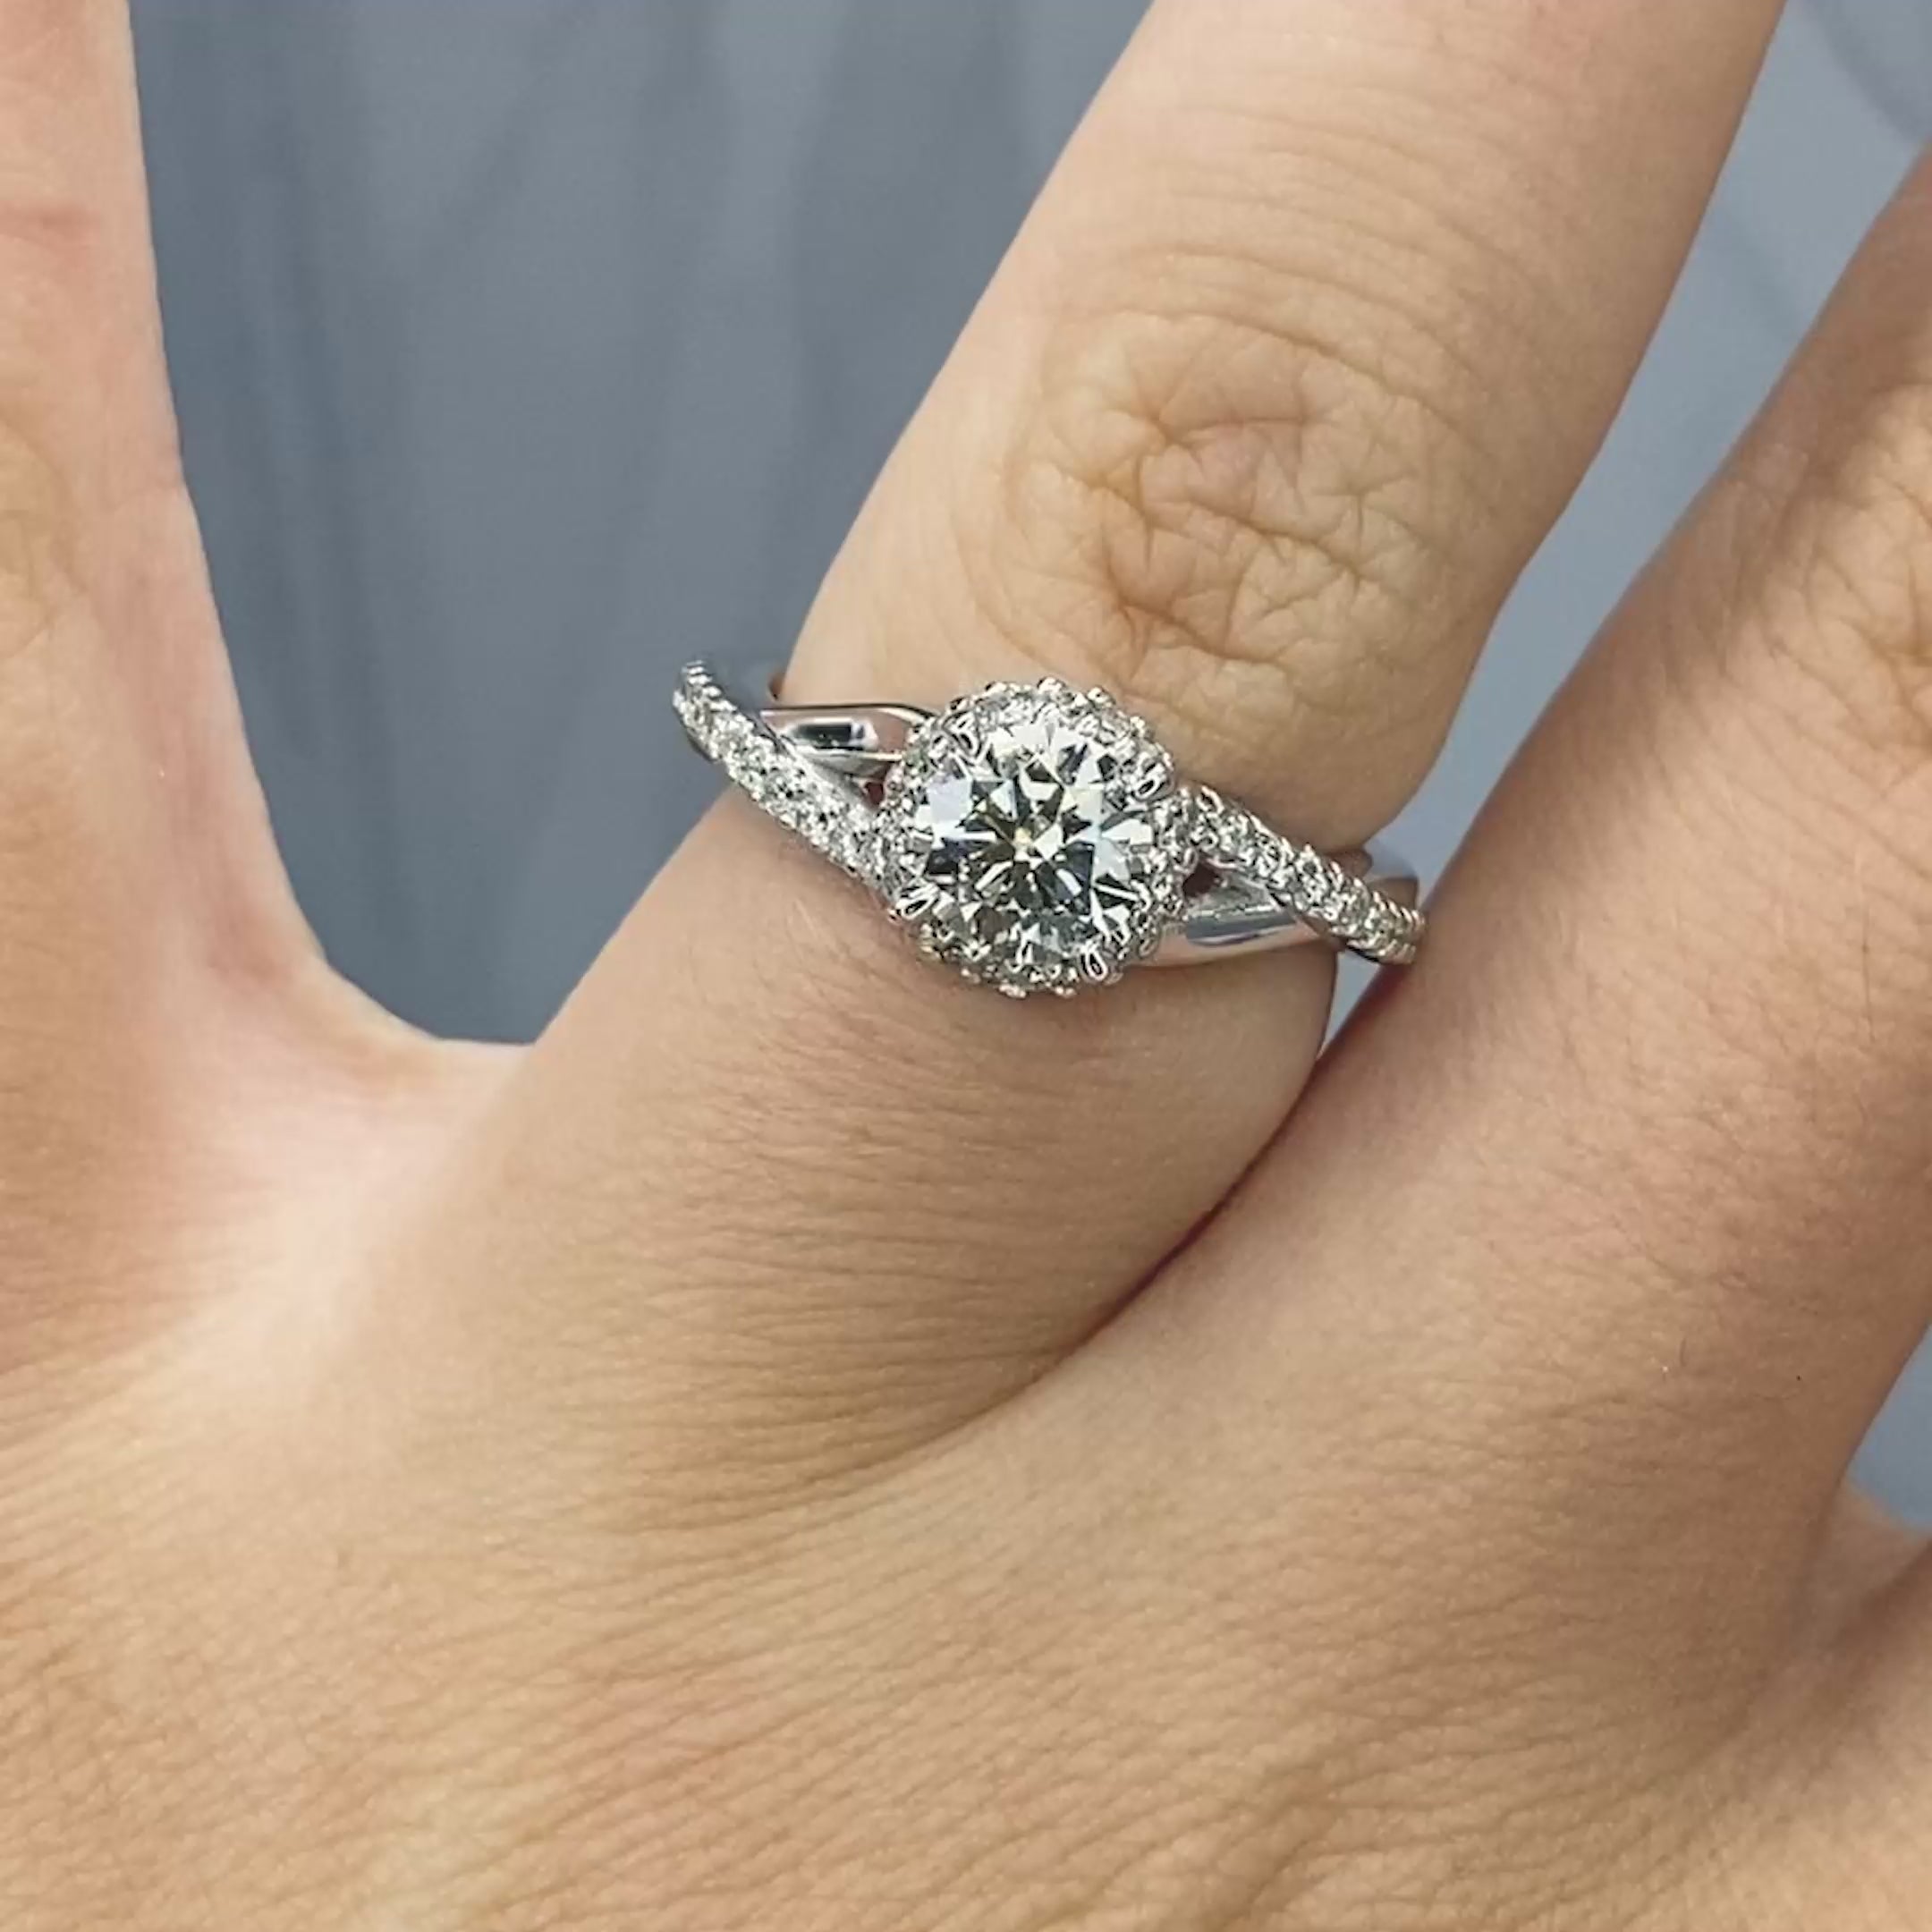 Classy 1.05 CT Round Cut Diamond Engagement Ring in Platinum